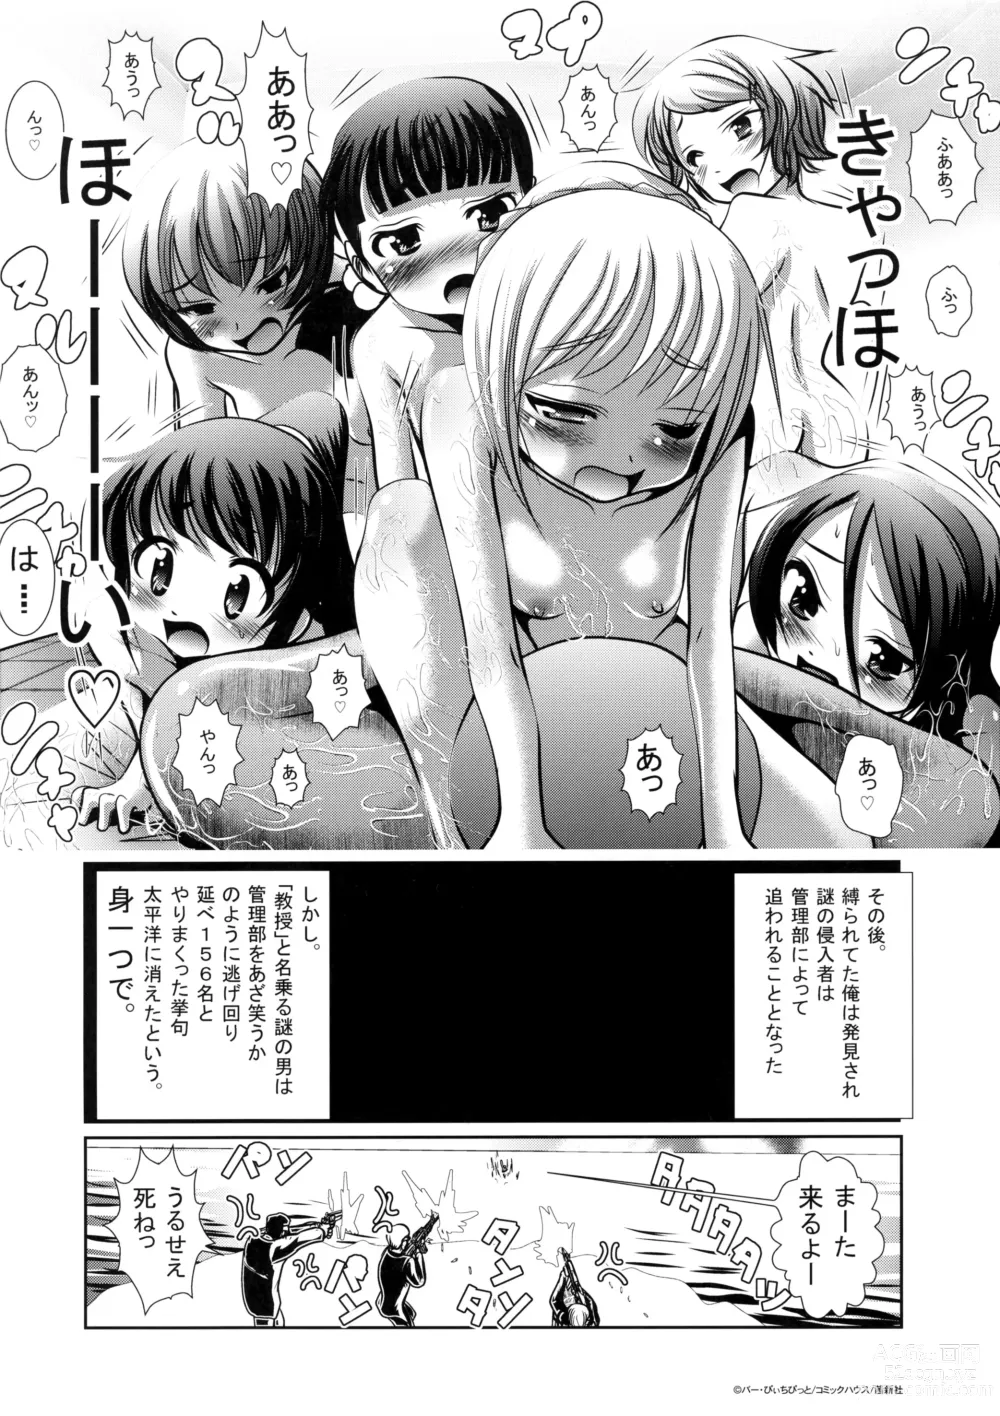 Page 8 of manga Sho-Chu-Rock 2 Toranoana Gentei 8P Shousasshi Mikoshima ~Yatsu wa Ikiteita~